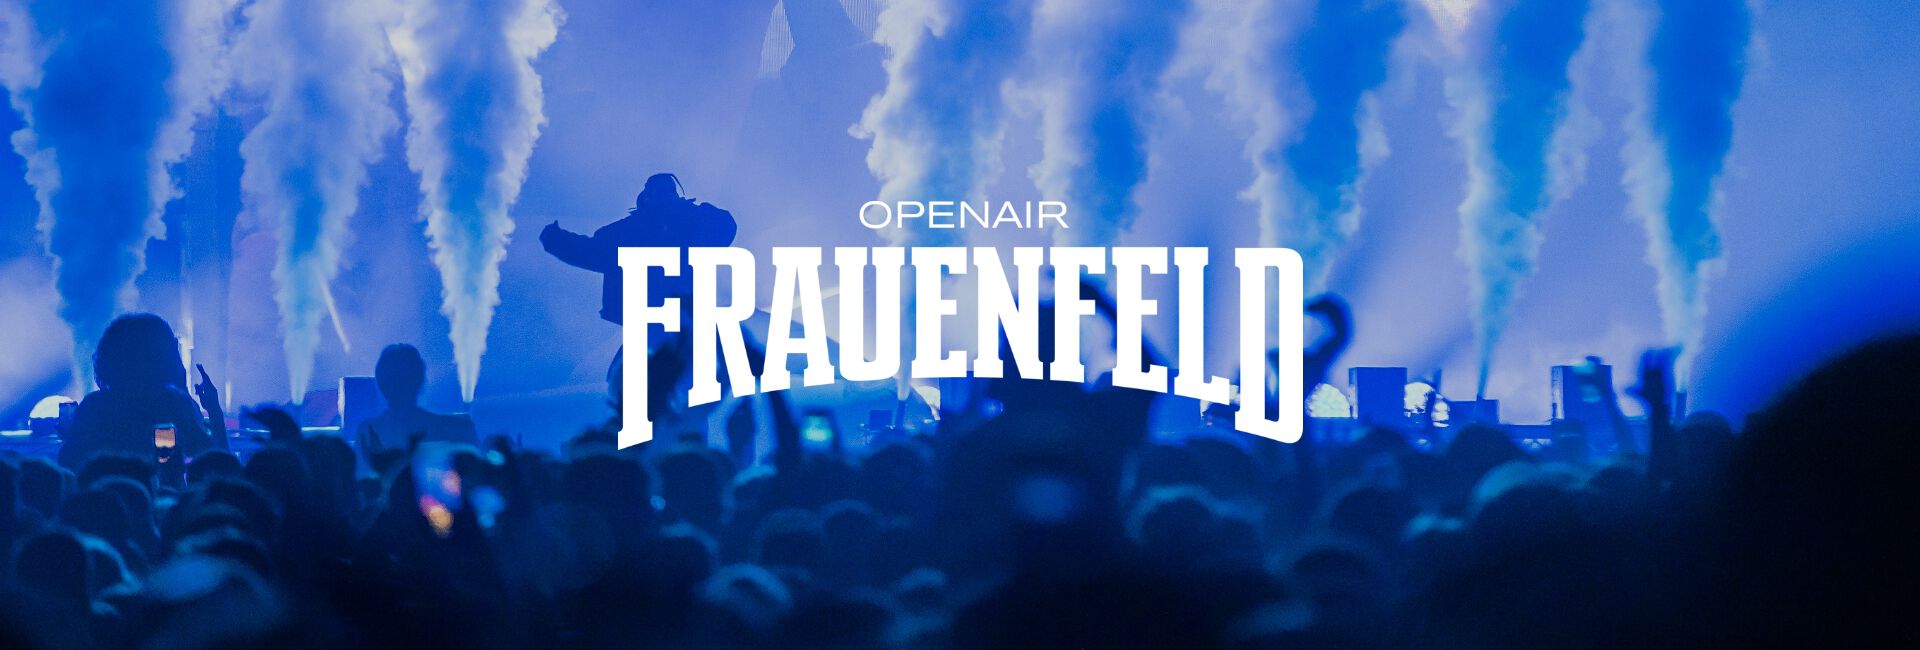 Frauenfeld banner